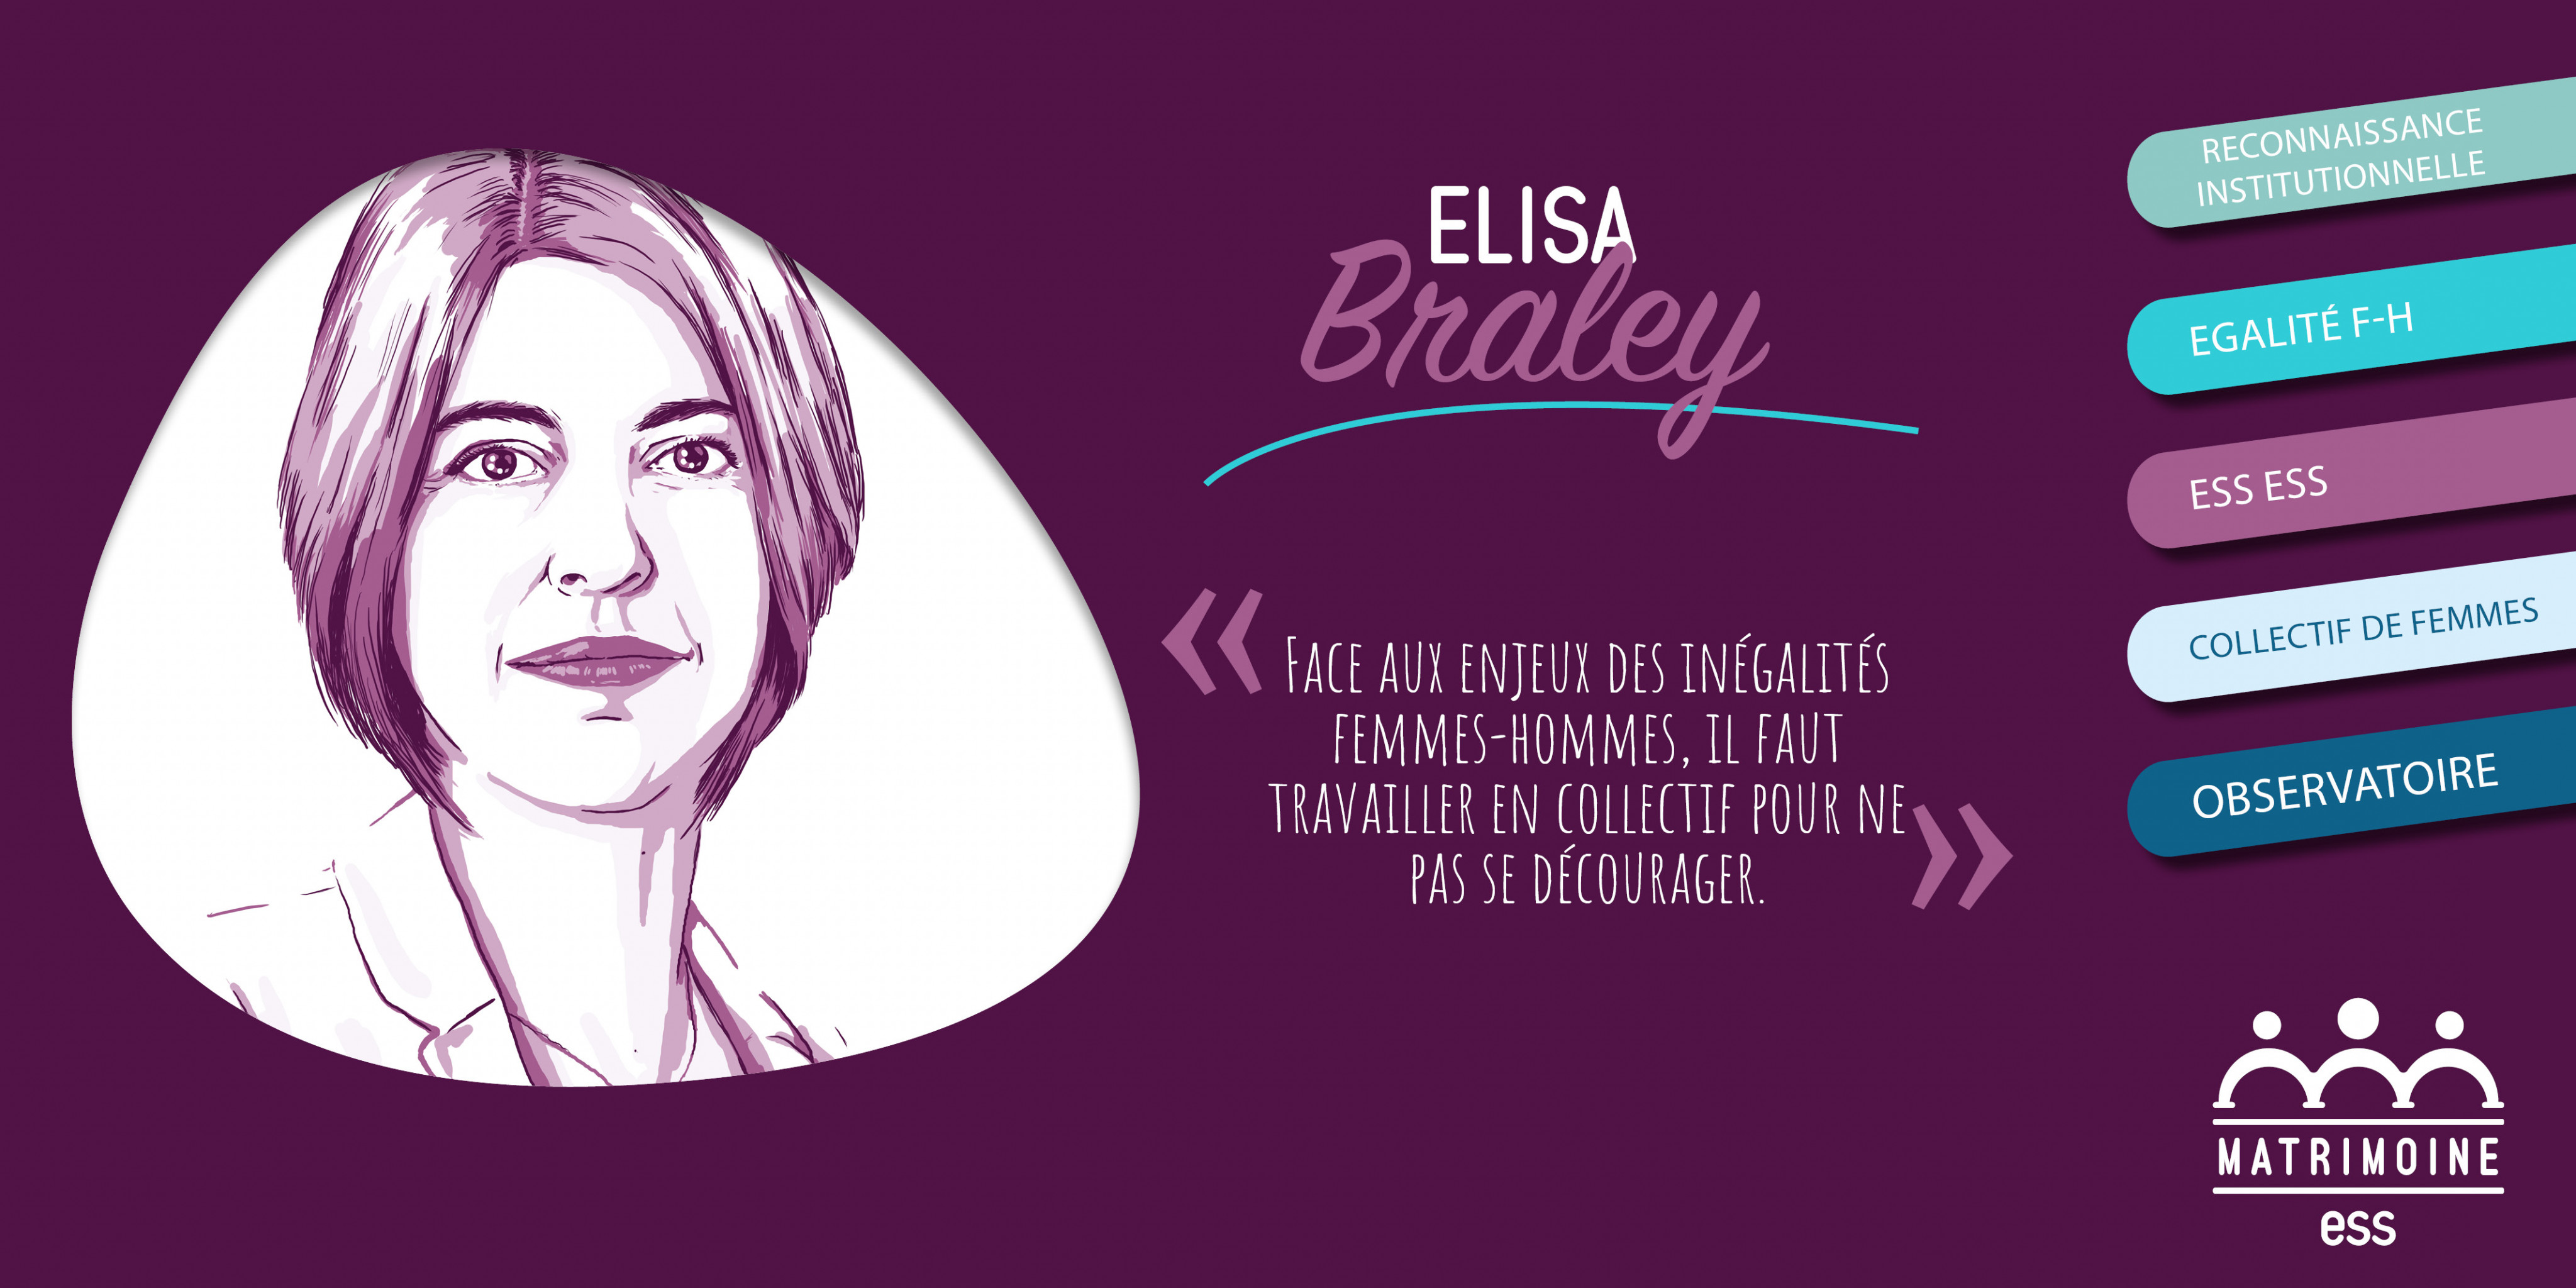 Portrait d'Elisa Braley, Présidente de la Commission Egalité Femmes-Hommes du CSESS